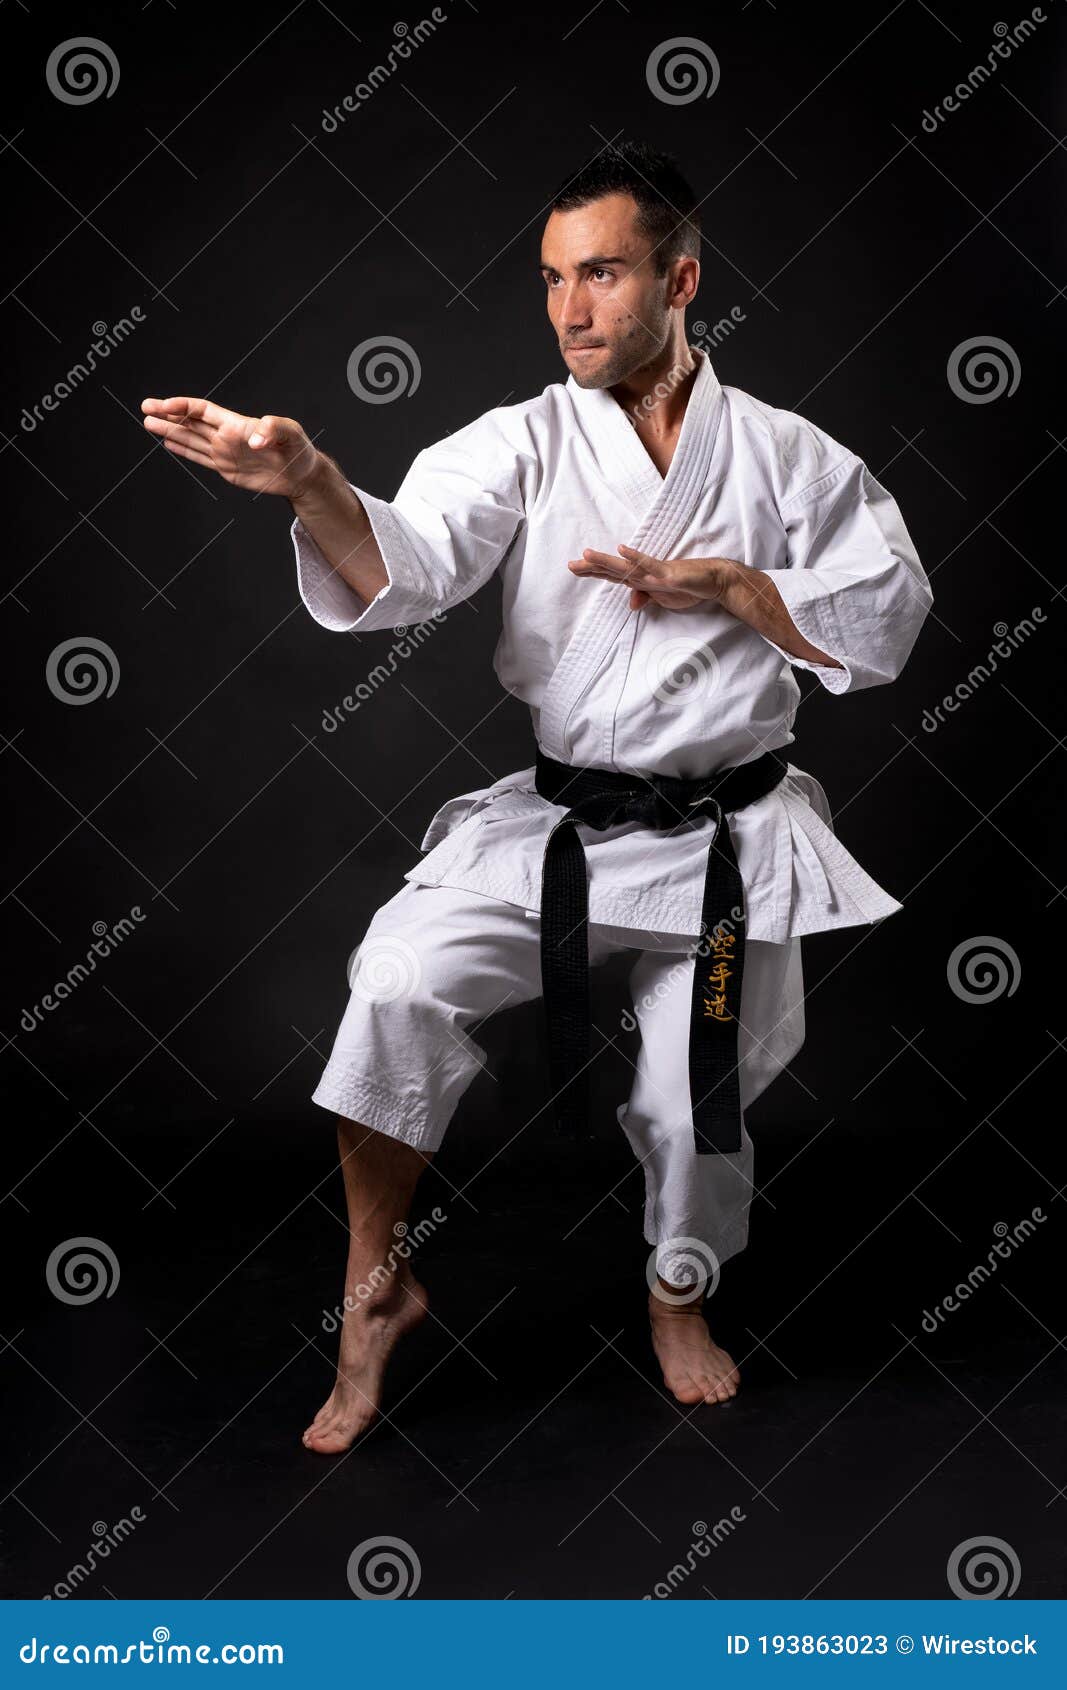 Karateka Practicing Kata with Black Background Stock Image - Image of ...